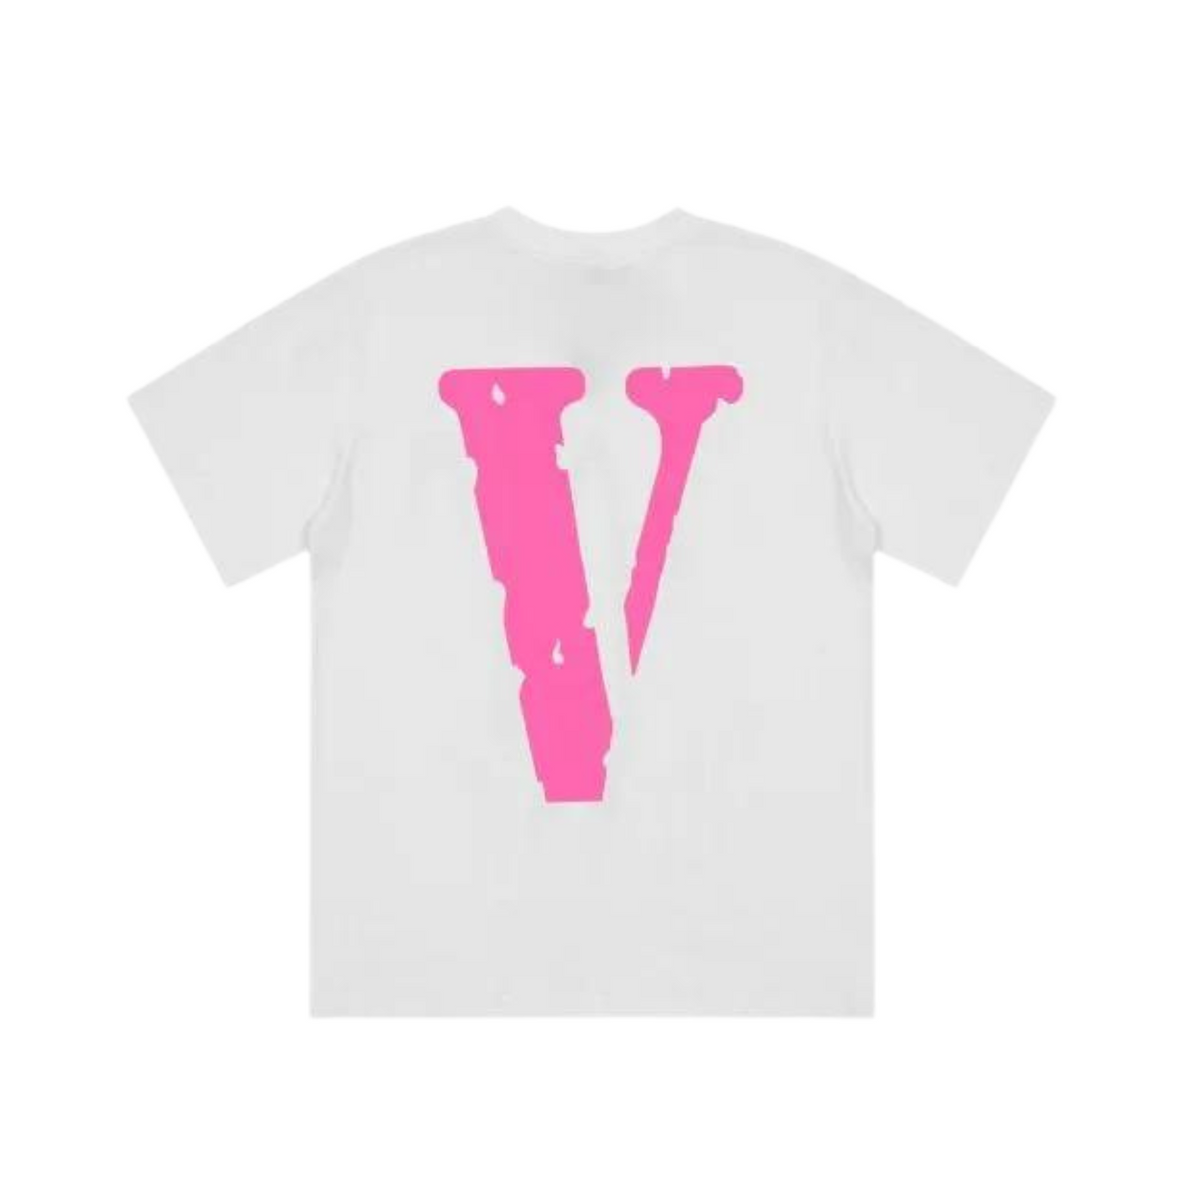 Vlone Staple Pink T-shirt "White"